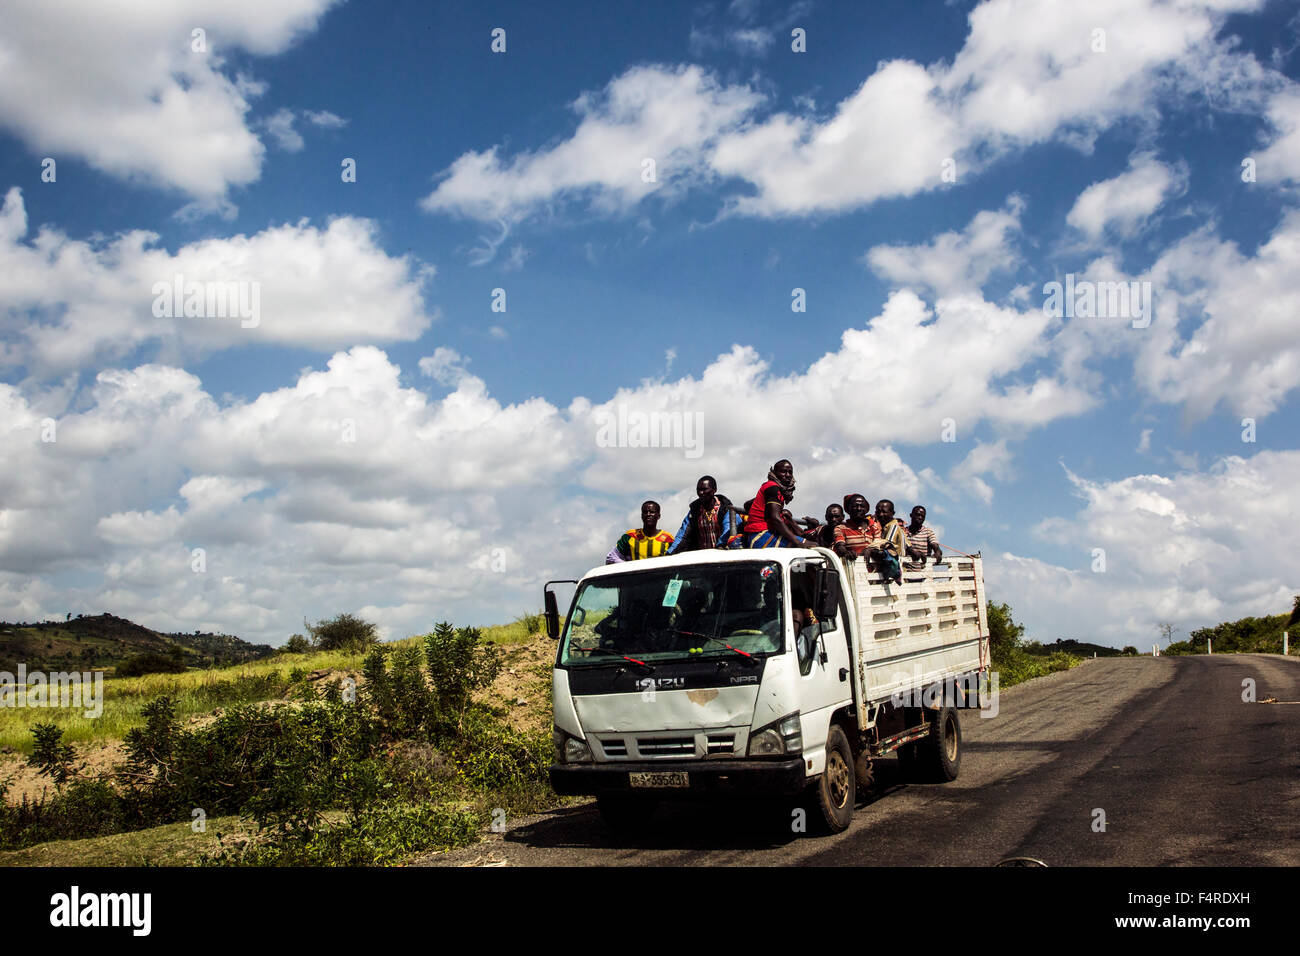 Konso uomini imballati su un carrello, Valle dell'Omo, Etiopia Foto Stock